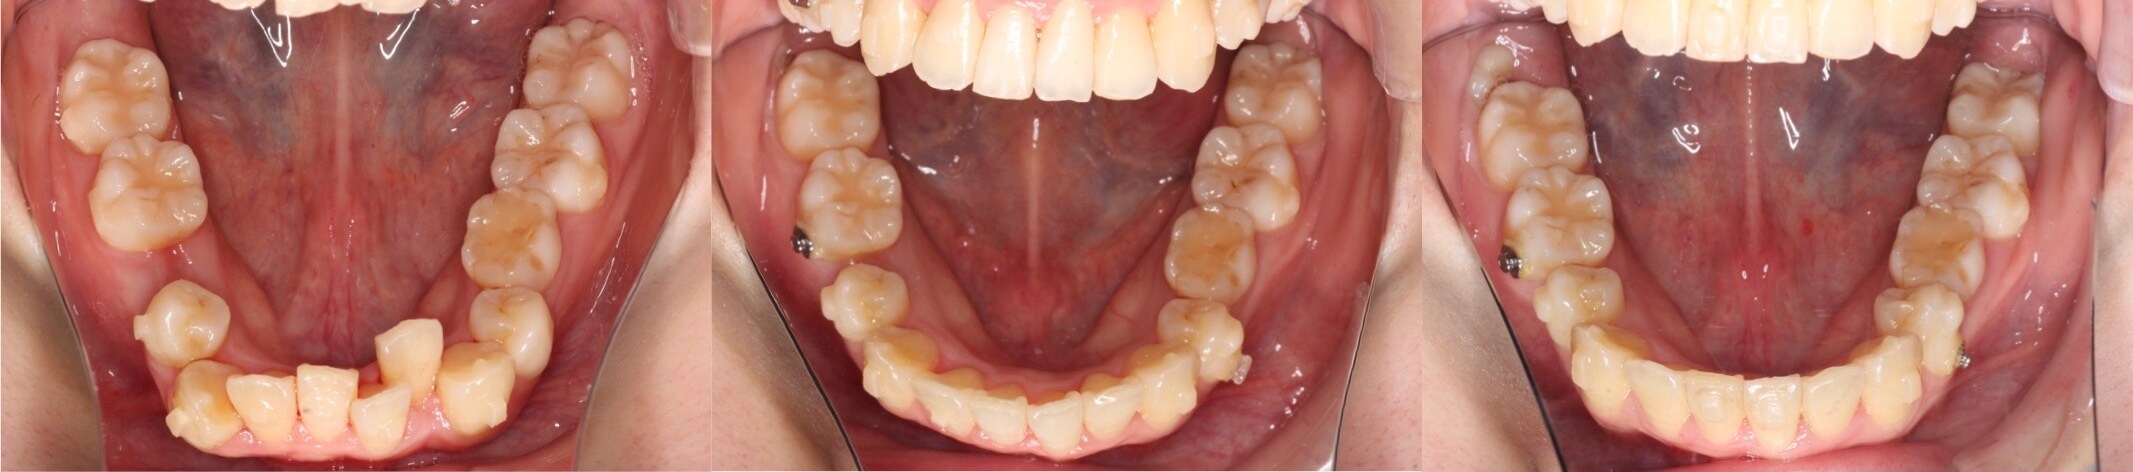 乳歯残存・インビザライン治療例